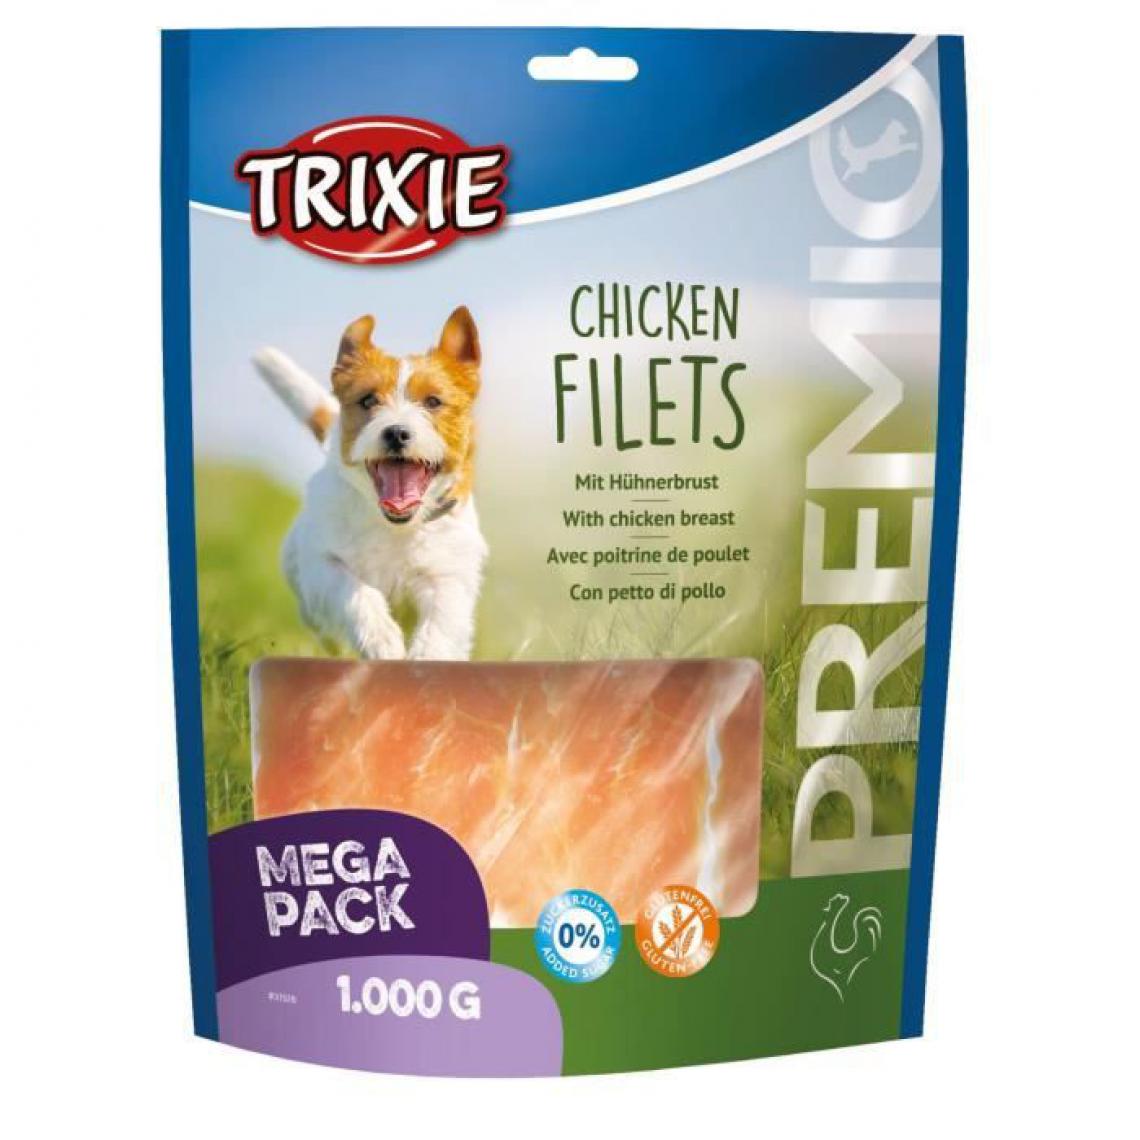 Trixie - Filets au poulet Premio - 1kg - Pour chien - Alimentation humide pour chien